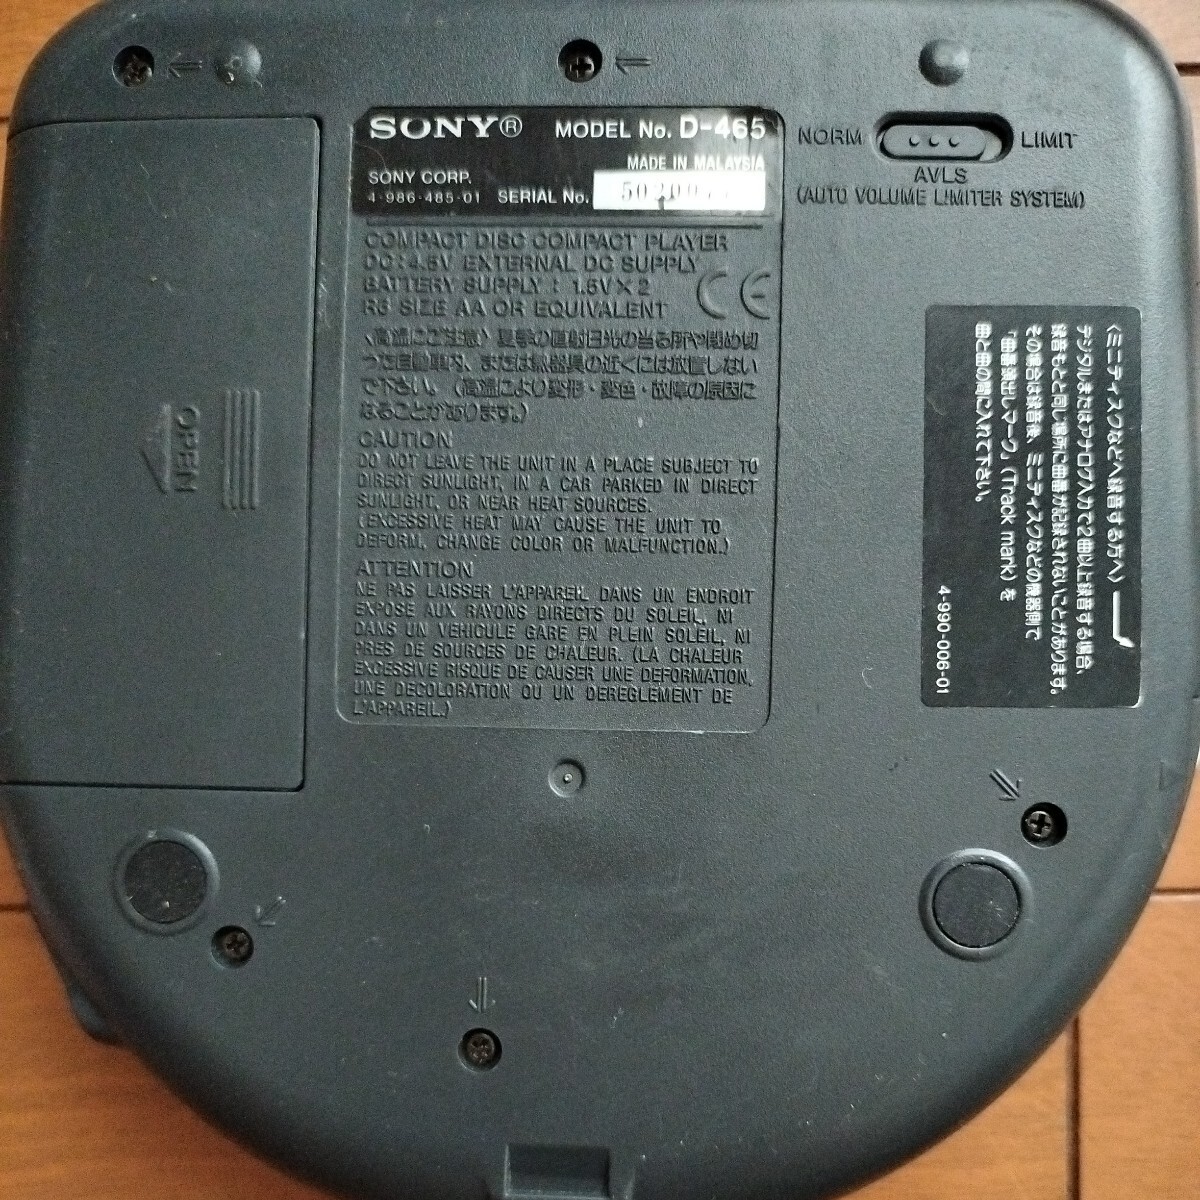  Sony SONY Discman ESP D-465 CD compact плеер CD портативный плеер цифровой MEGA BASS пуск проверка settled дистанционный пульт жидкокристаллический монитор не работает 